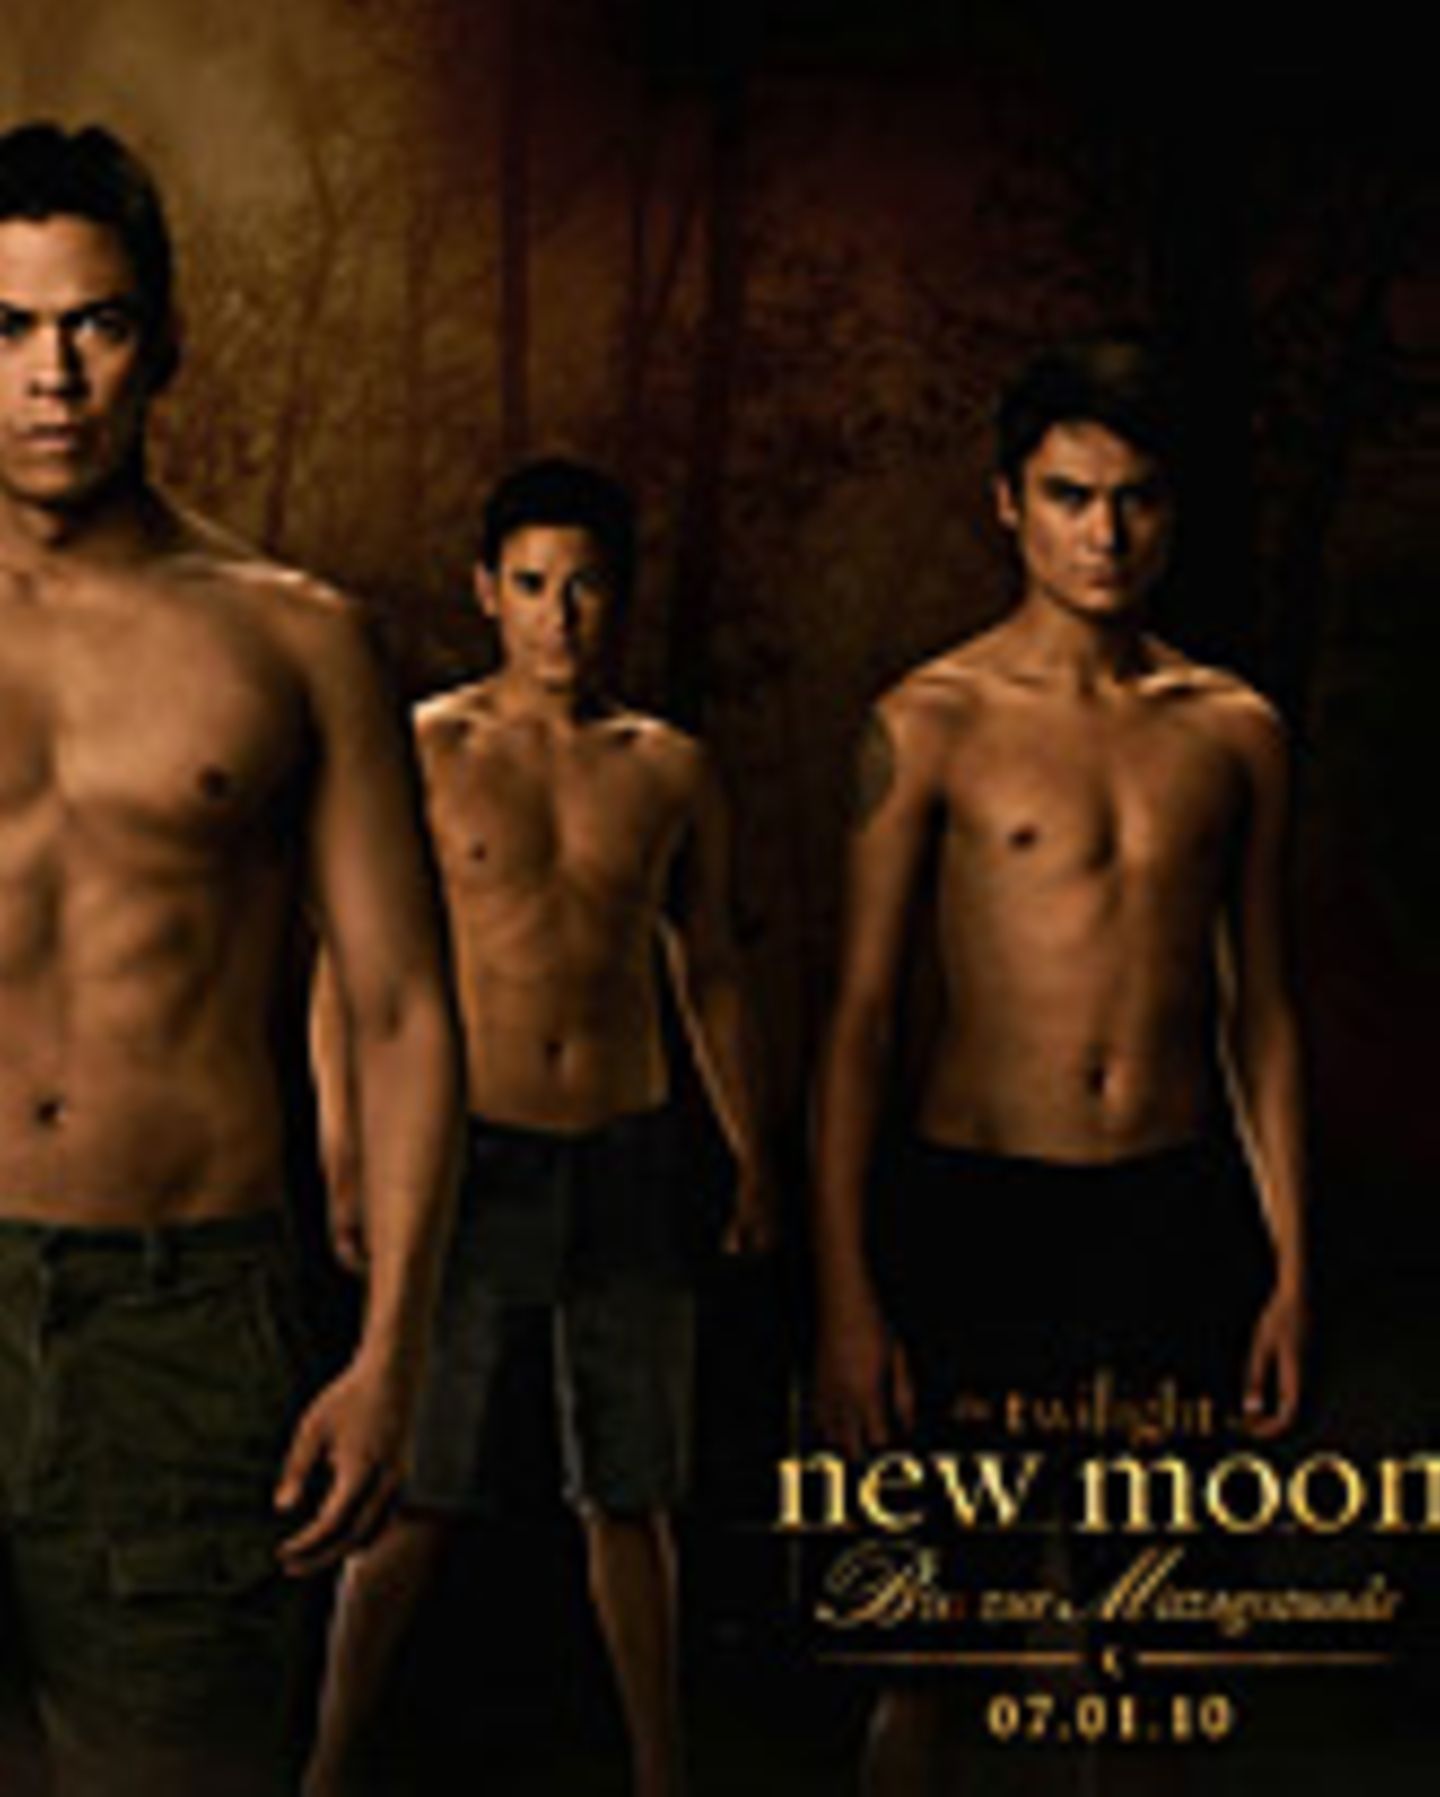 "Twilight: New Moon - Bis(s) zur Mittagsstunde".